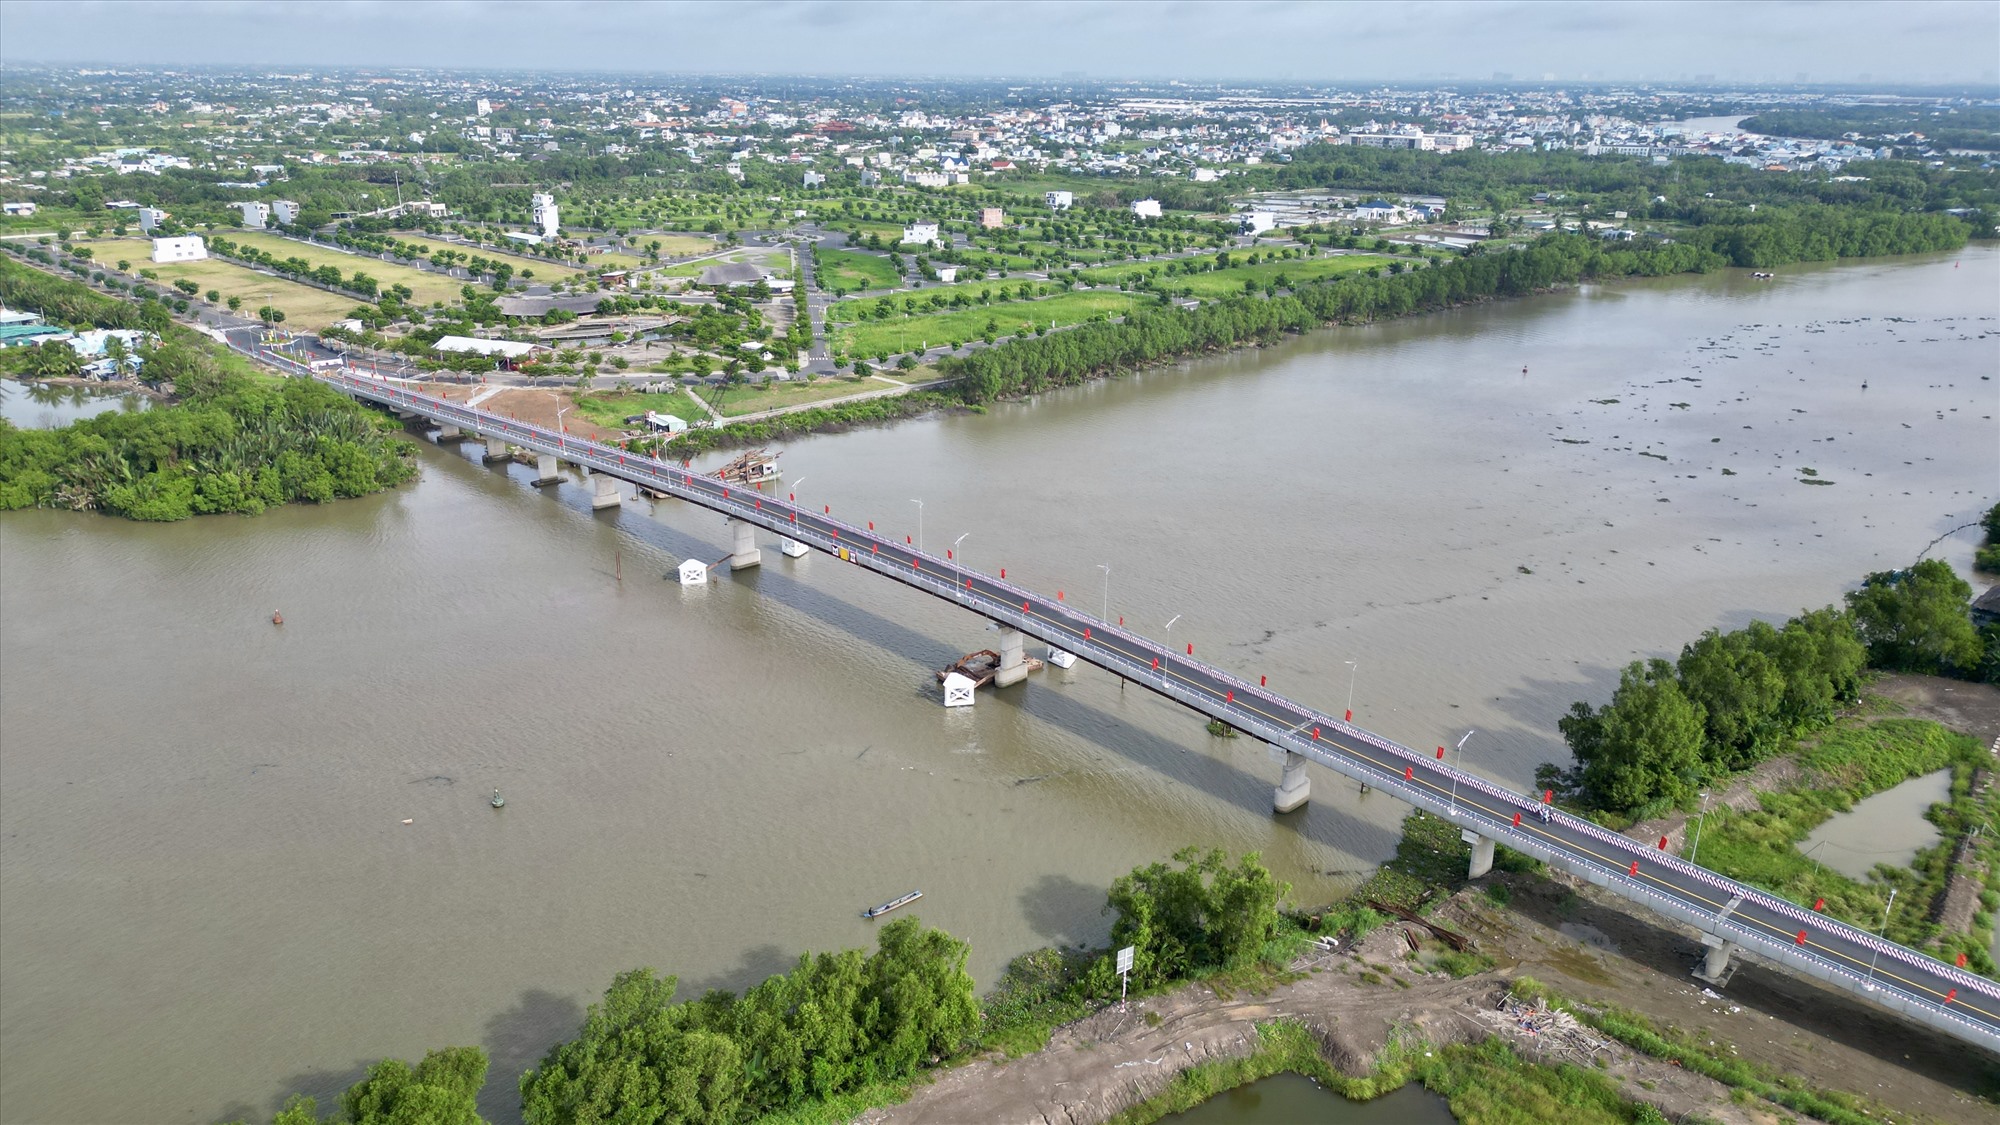 Cầu Cần Giuộc hoàn thành, đưa vào sử dụng kết nối giữa vùng thượng và vùng hạ của huyện Cần Giuộc.